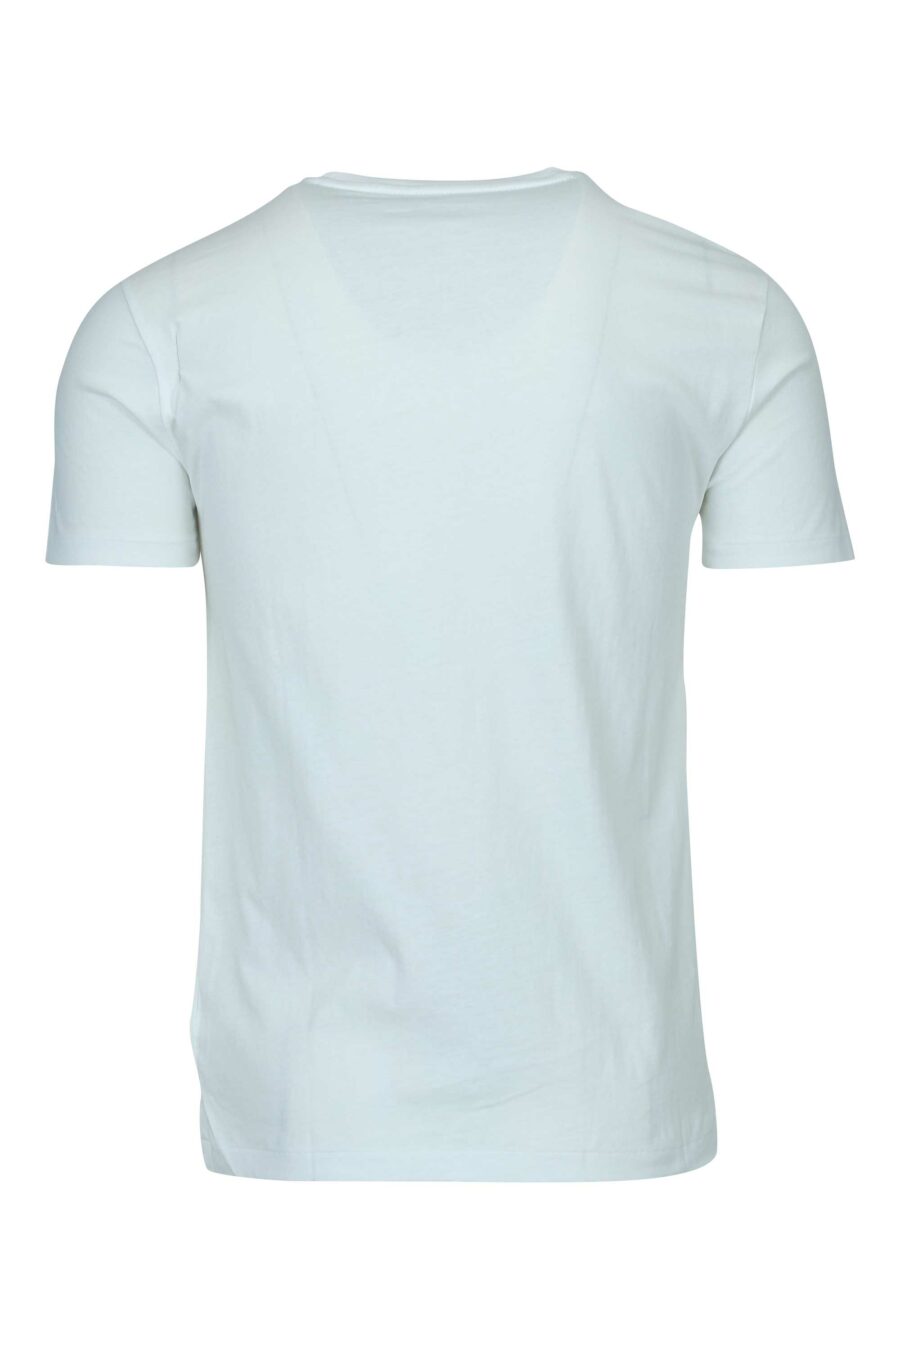 Camiseta blanca con minilogo "polo" - 5045018254767 1